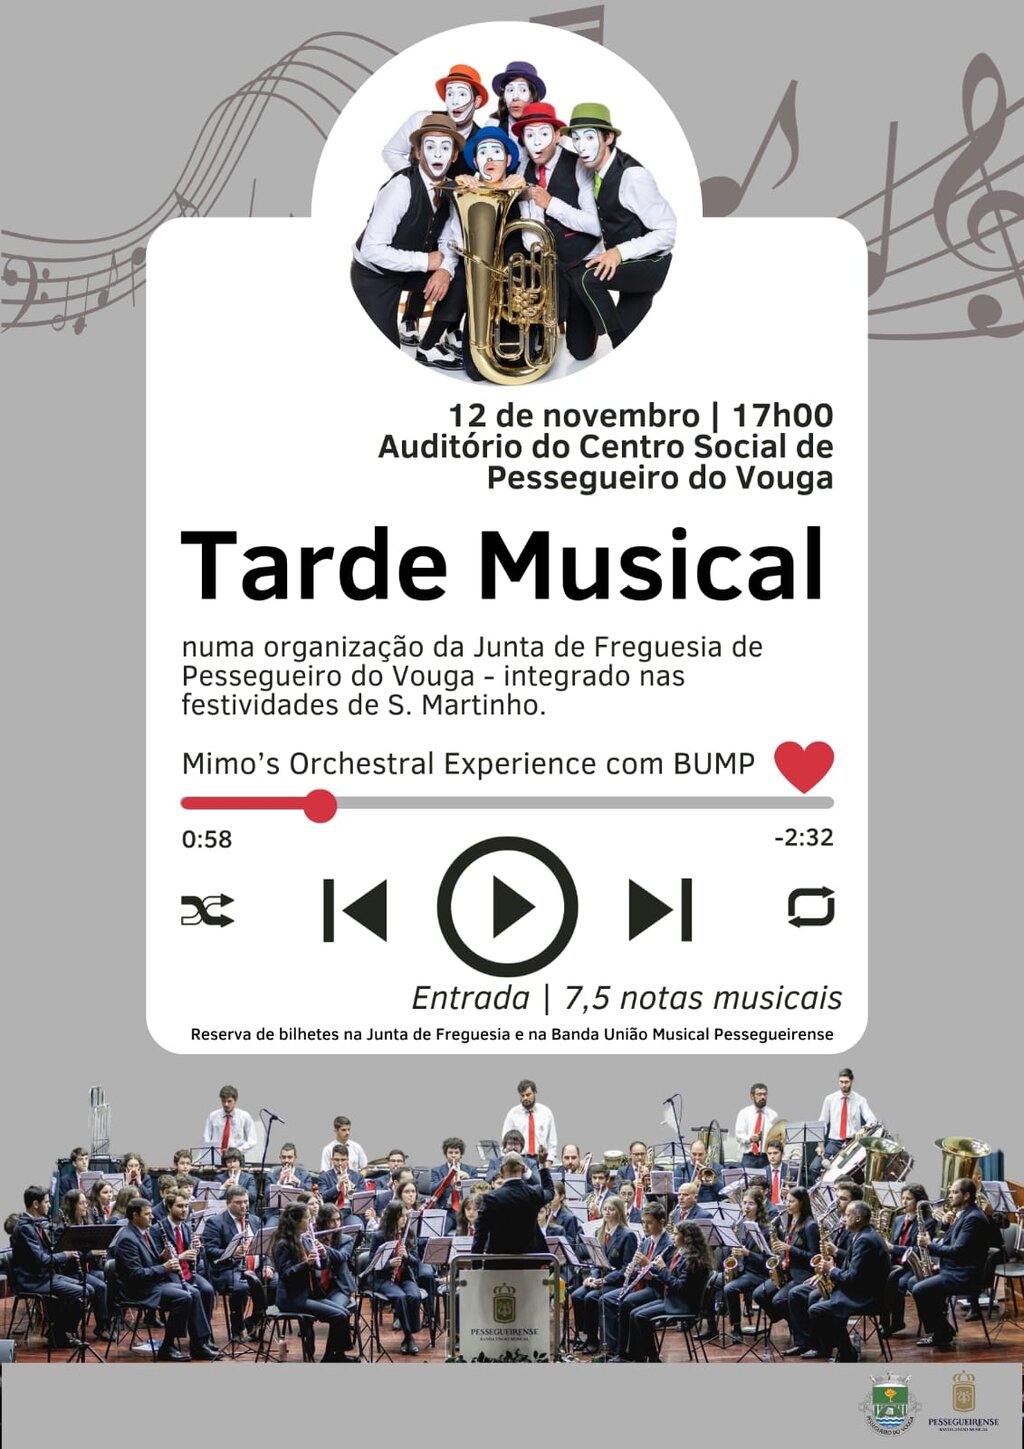 12 nov - Concerto Tarde Musical - Auditório - Pessegeurio do Vouga